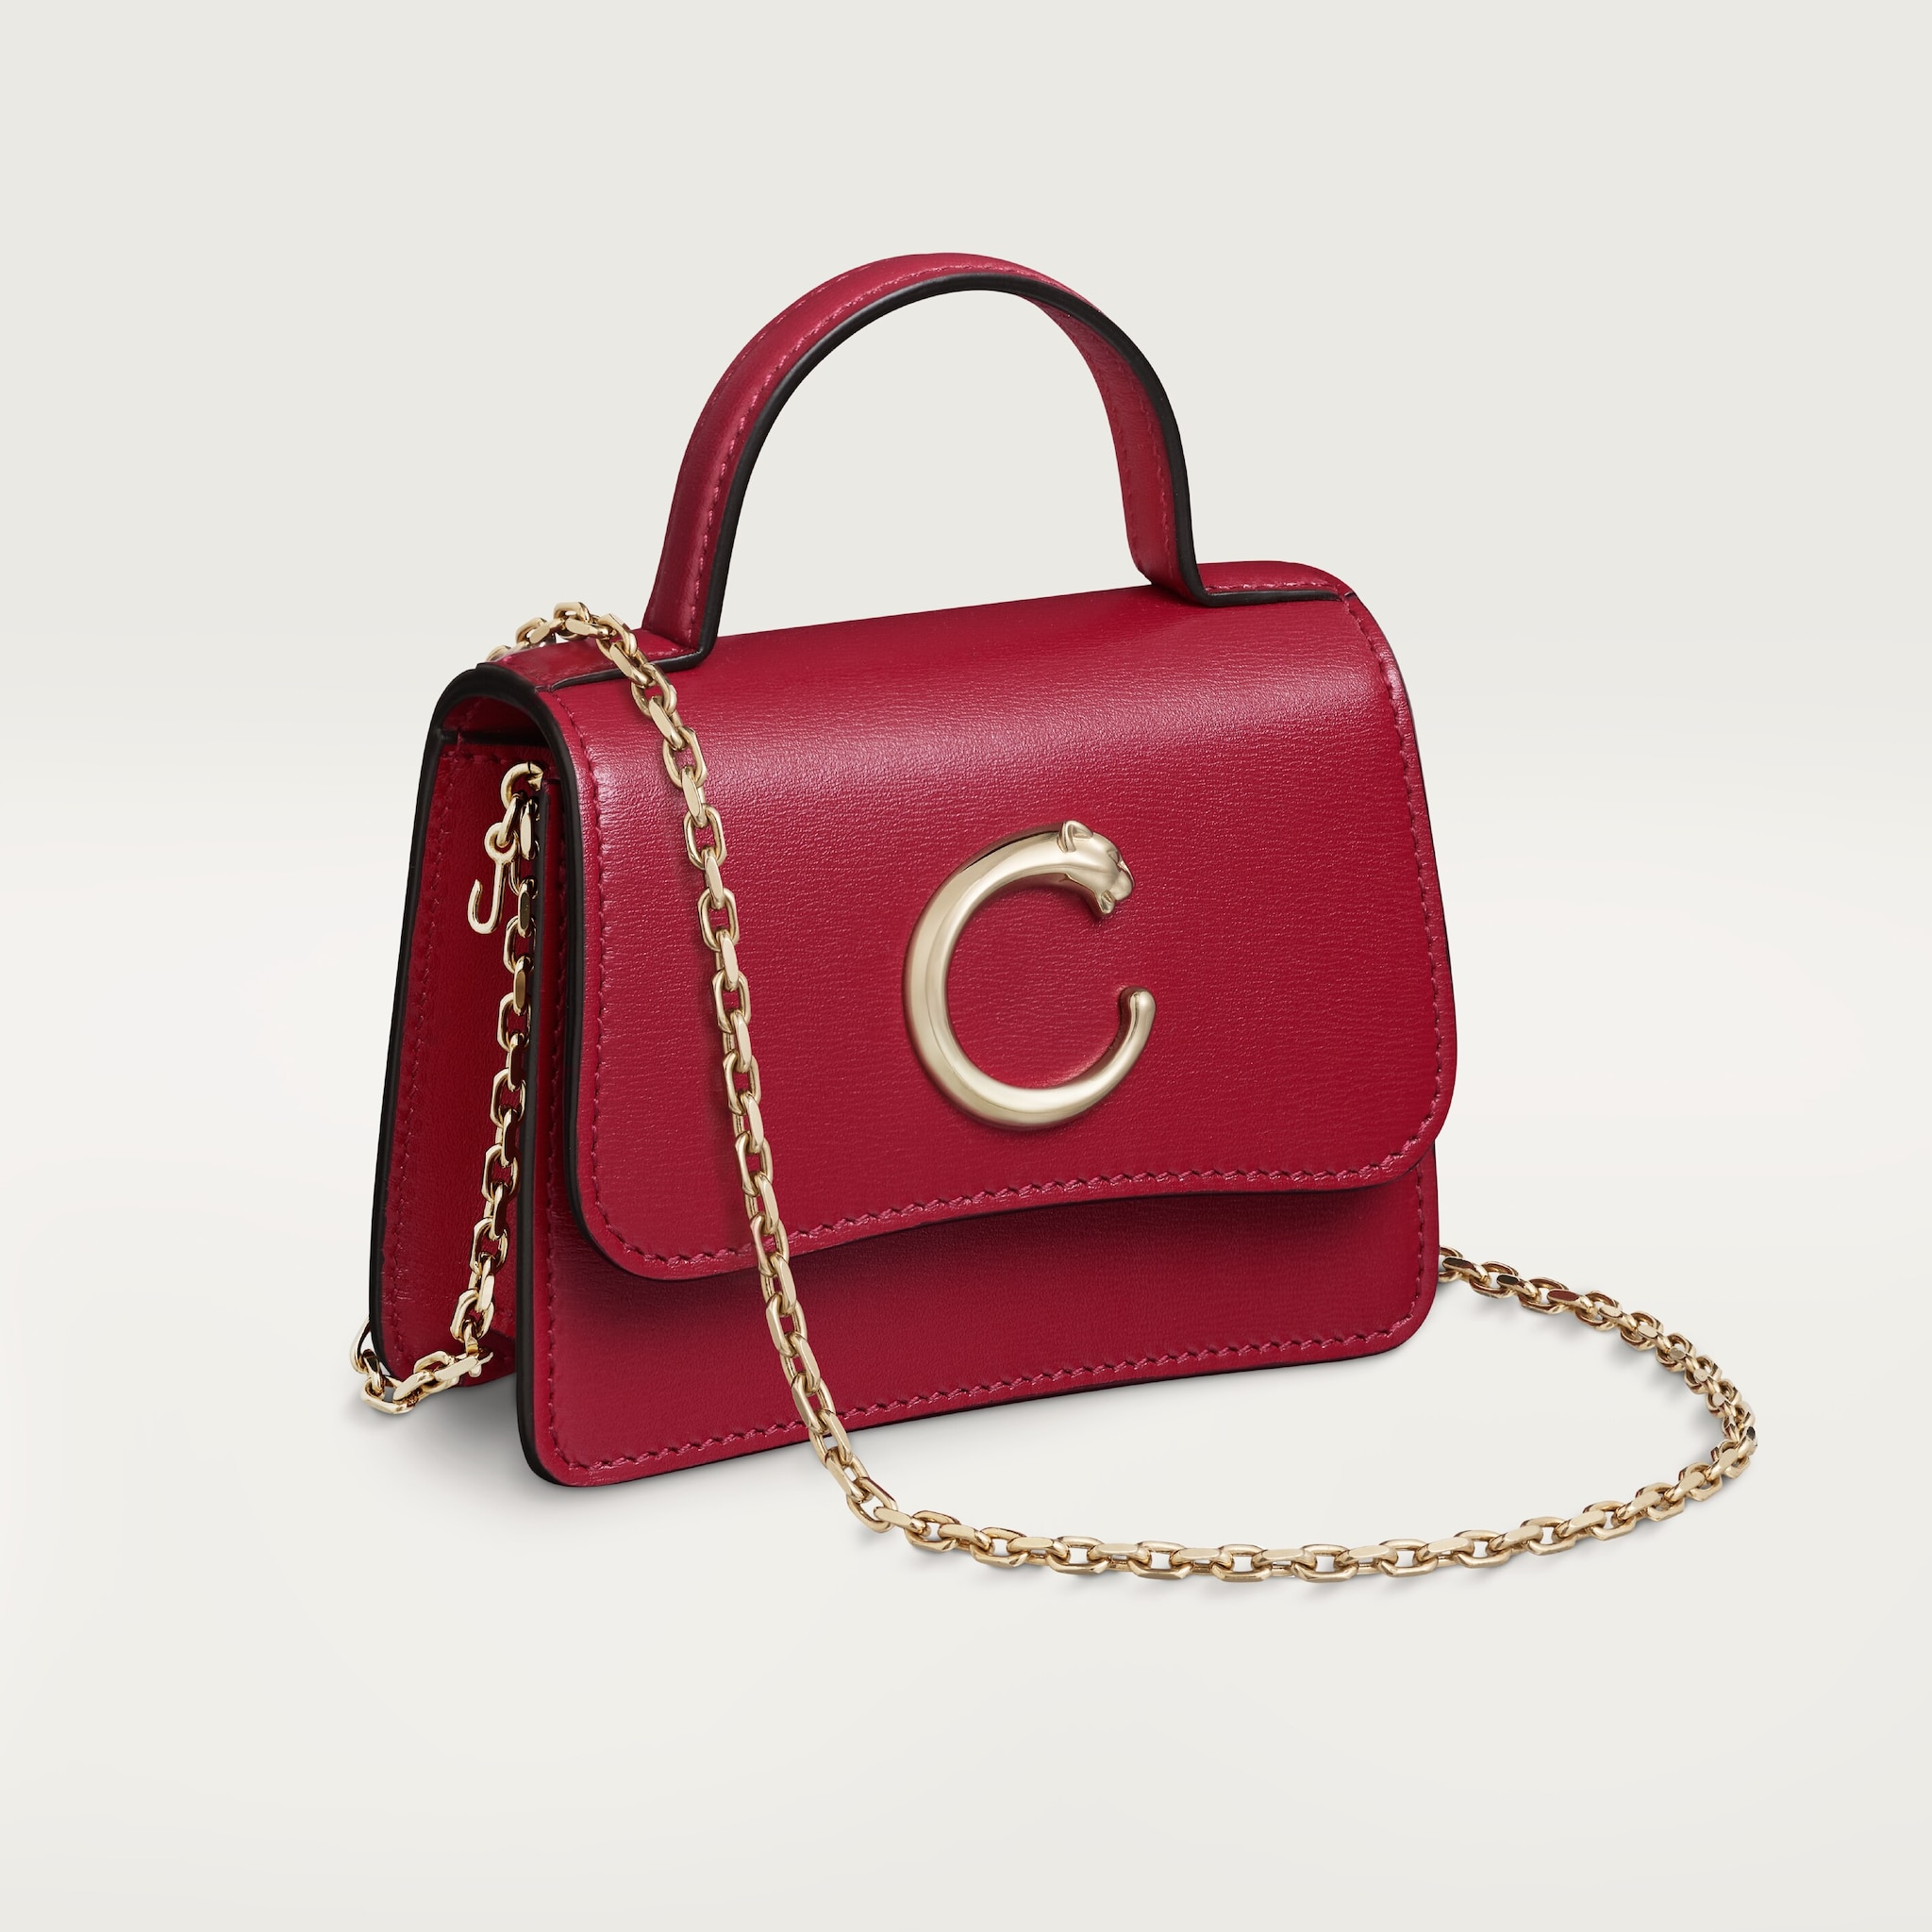 Chain bag micro model, Panthère de CartierCherry red calfskin, golden finish